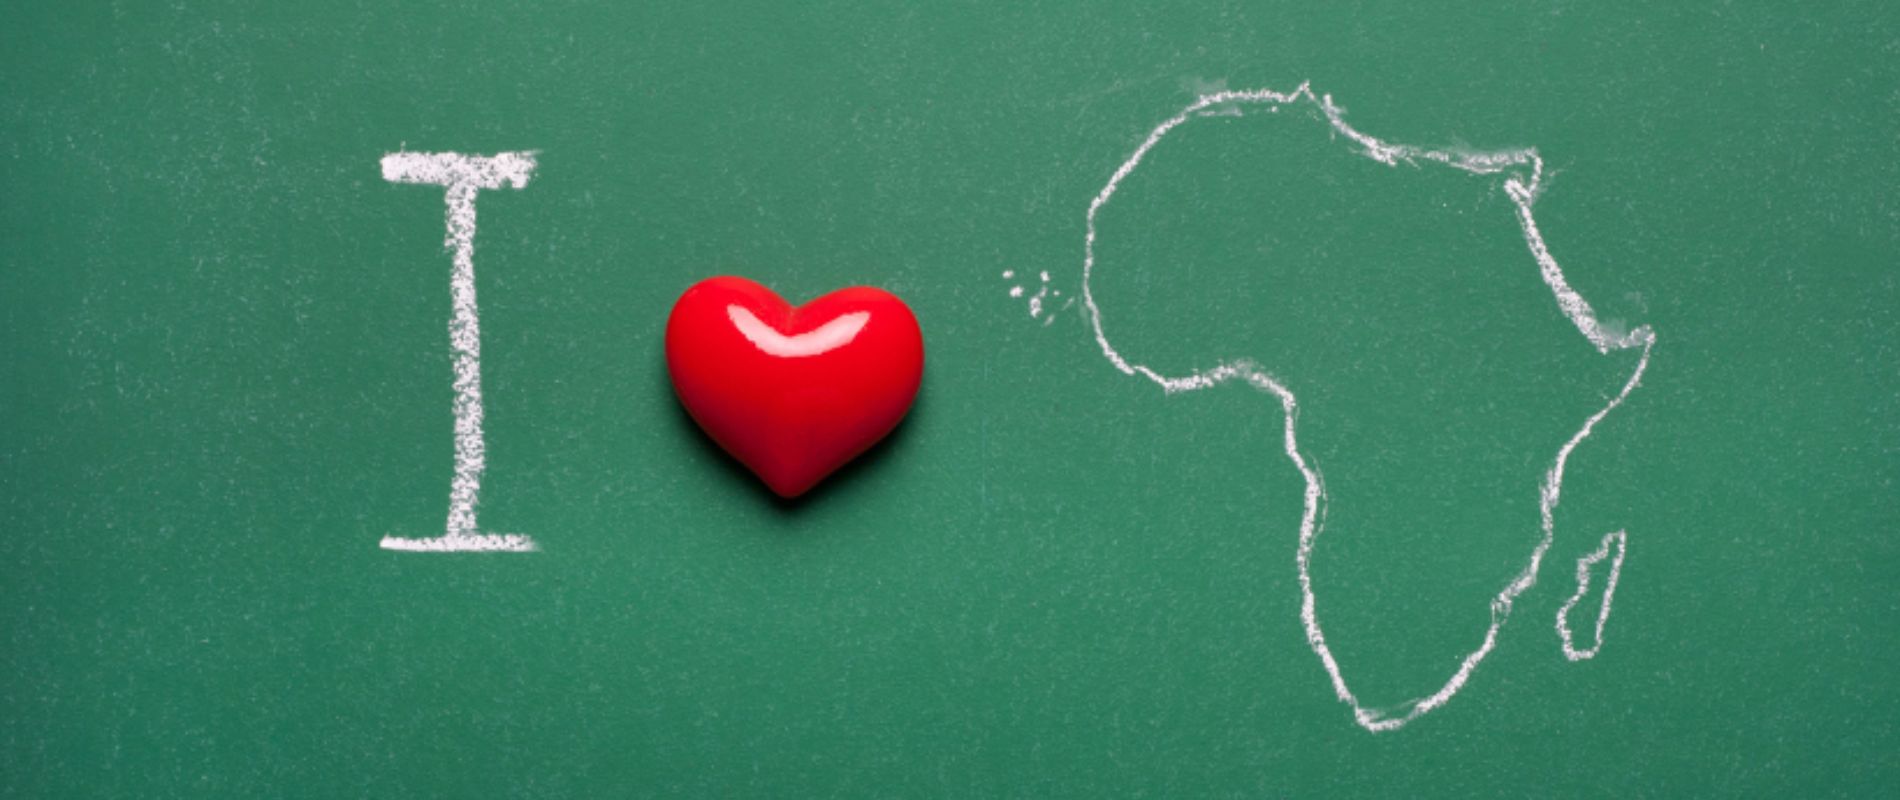 Blog, Liefde voor Afrika, Vrijwilligerswerk, Stage, Oeganda, Malawi, Kenia, Doingoood Experience, check